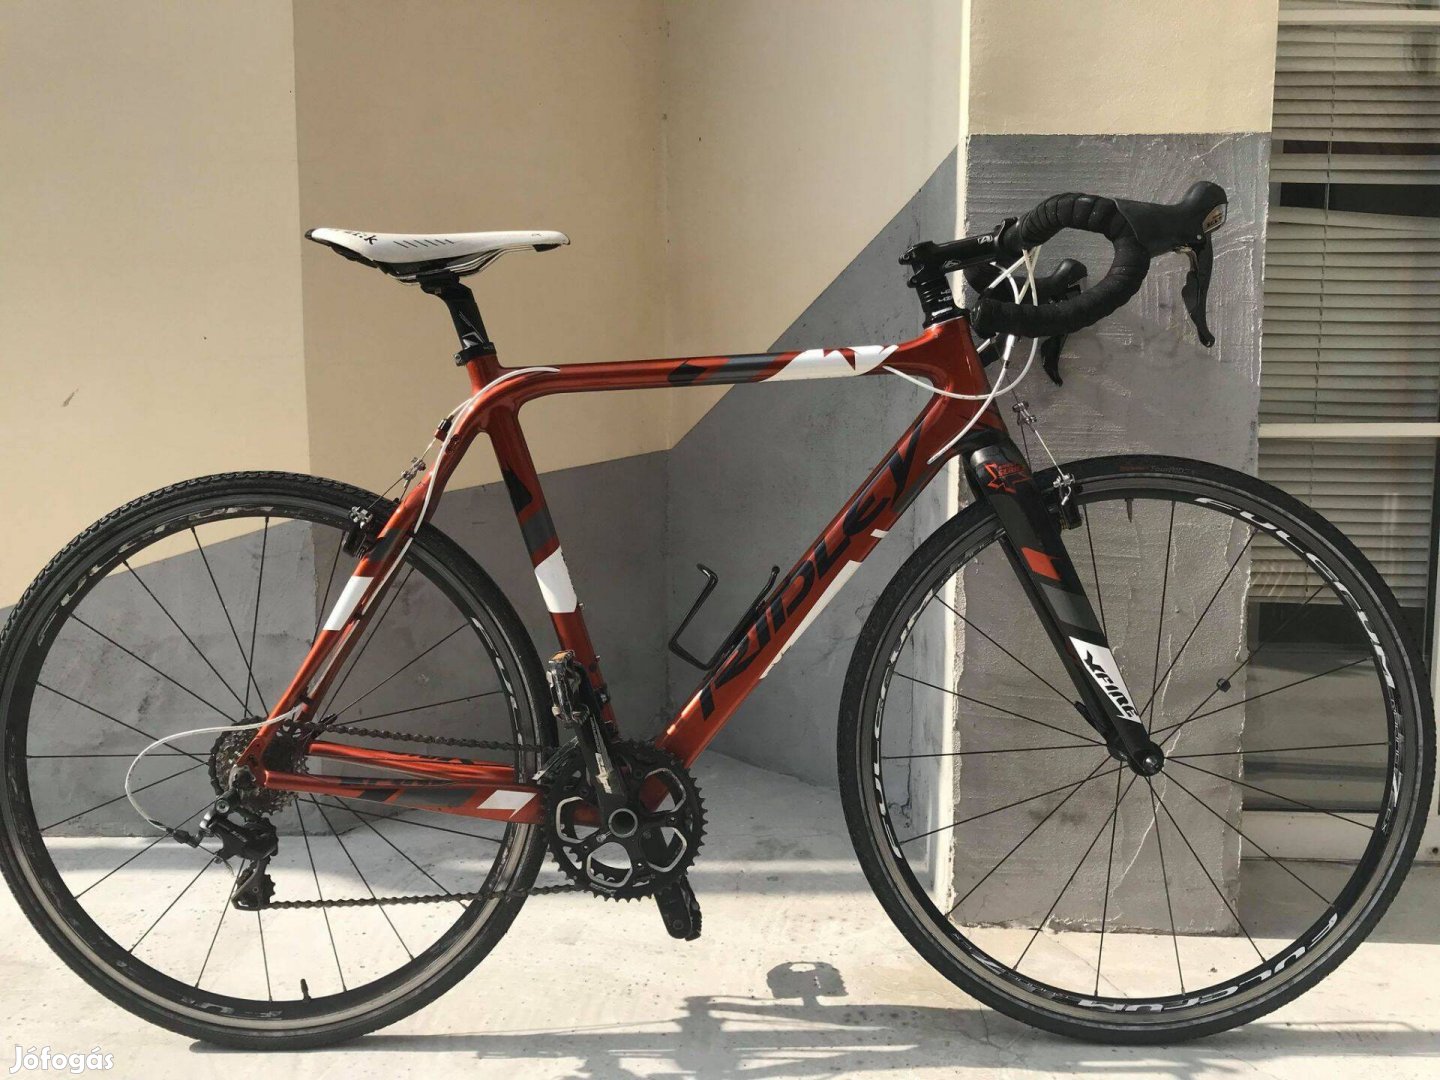 Eladó Ridley Xfire Shimano 105 szettes carbon országúti kerékpár